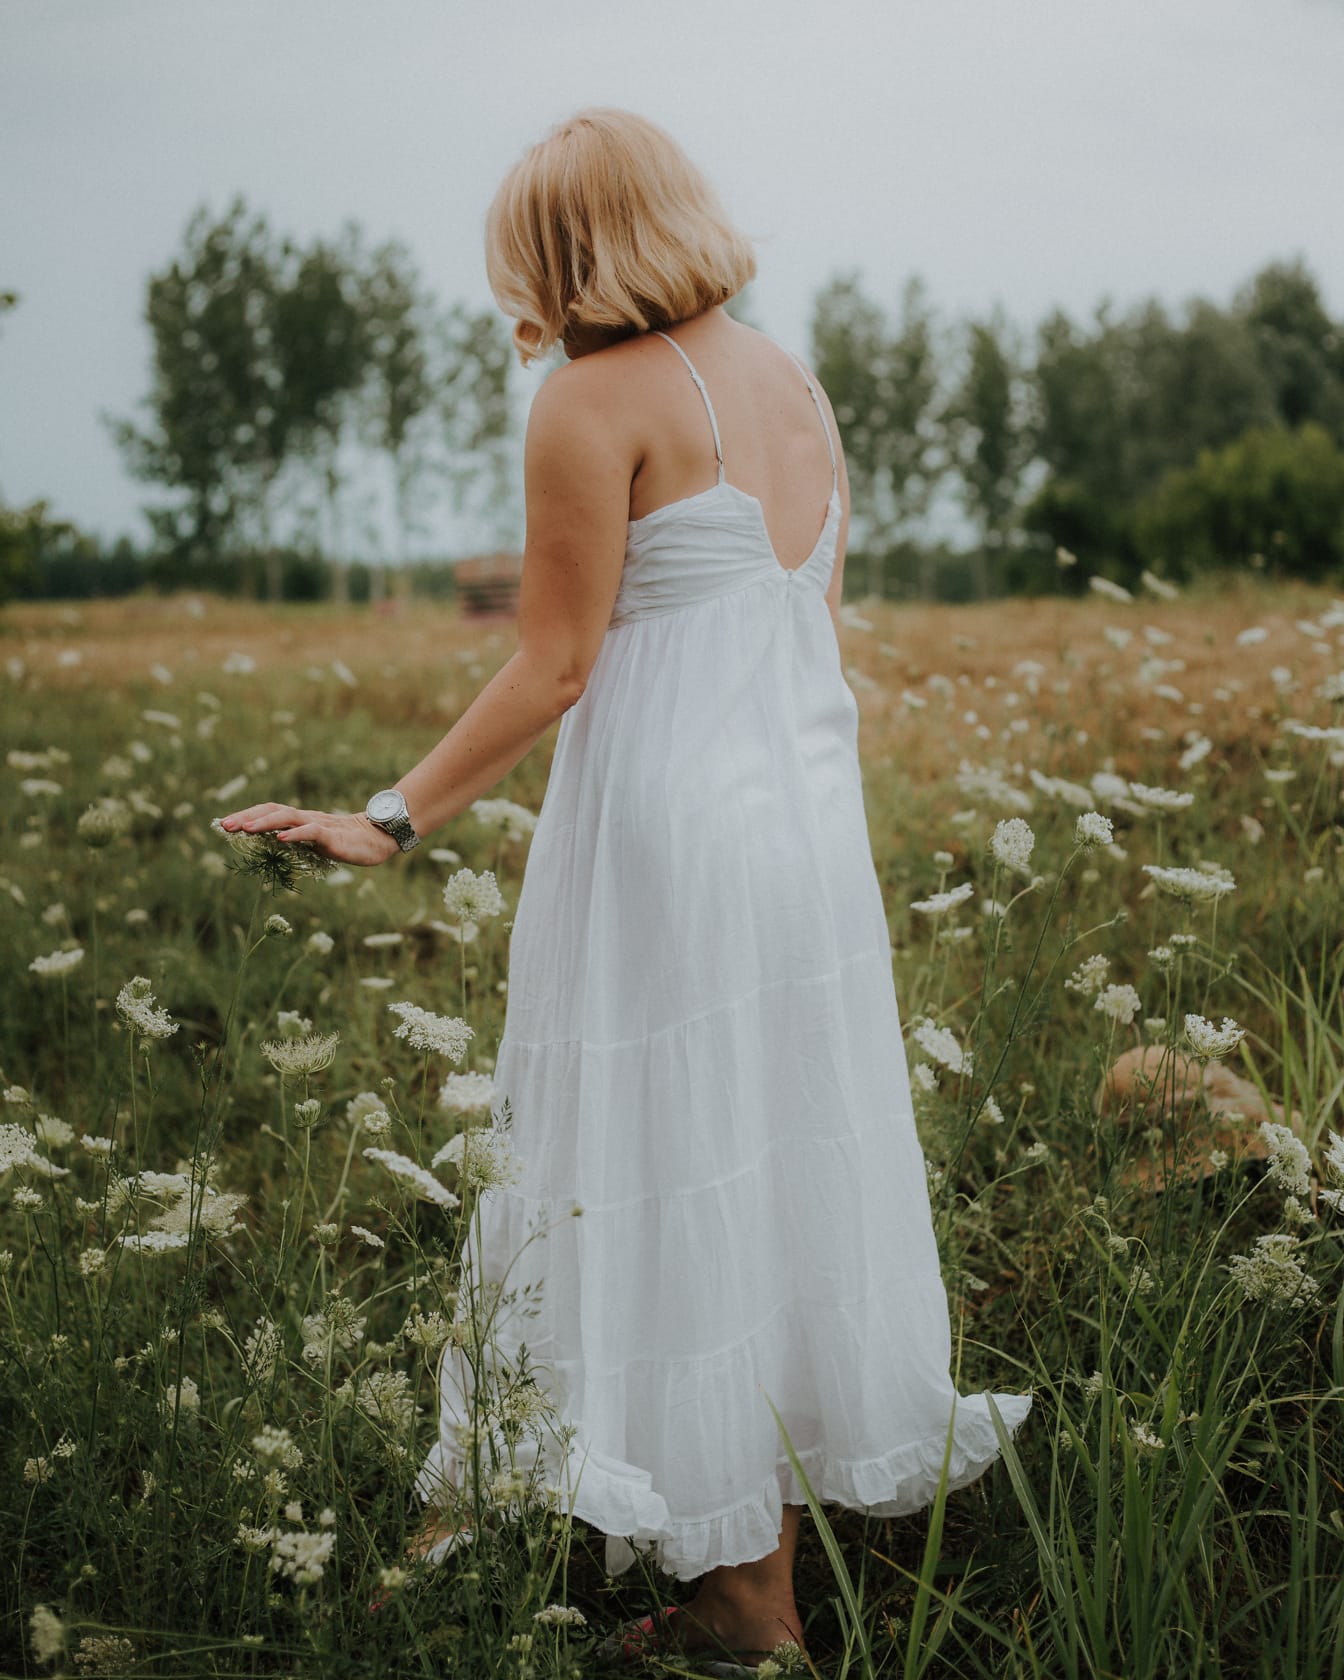 Blond kvinde på eng iført hvid kjole